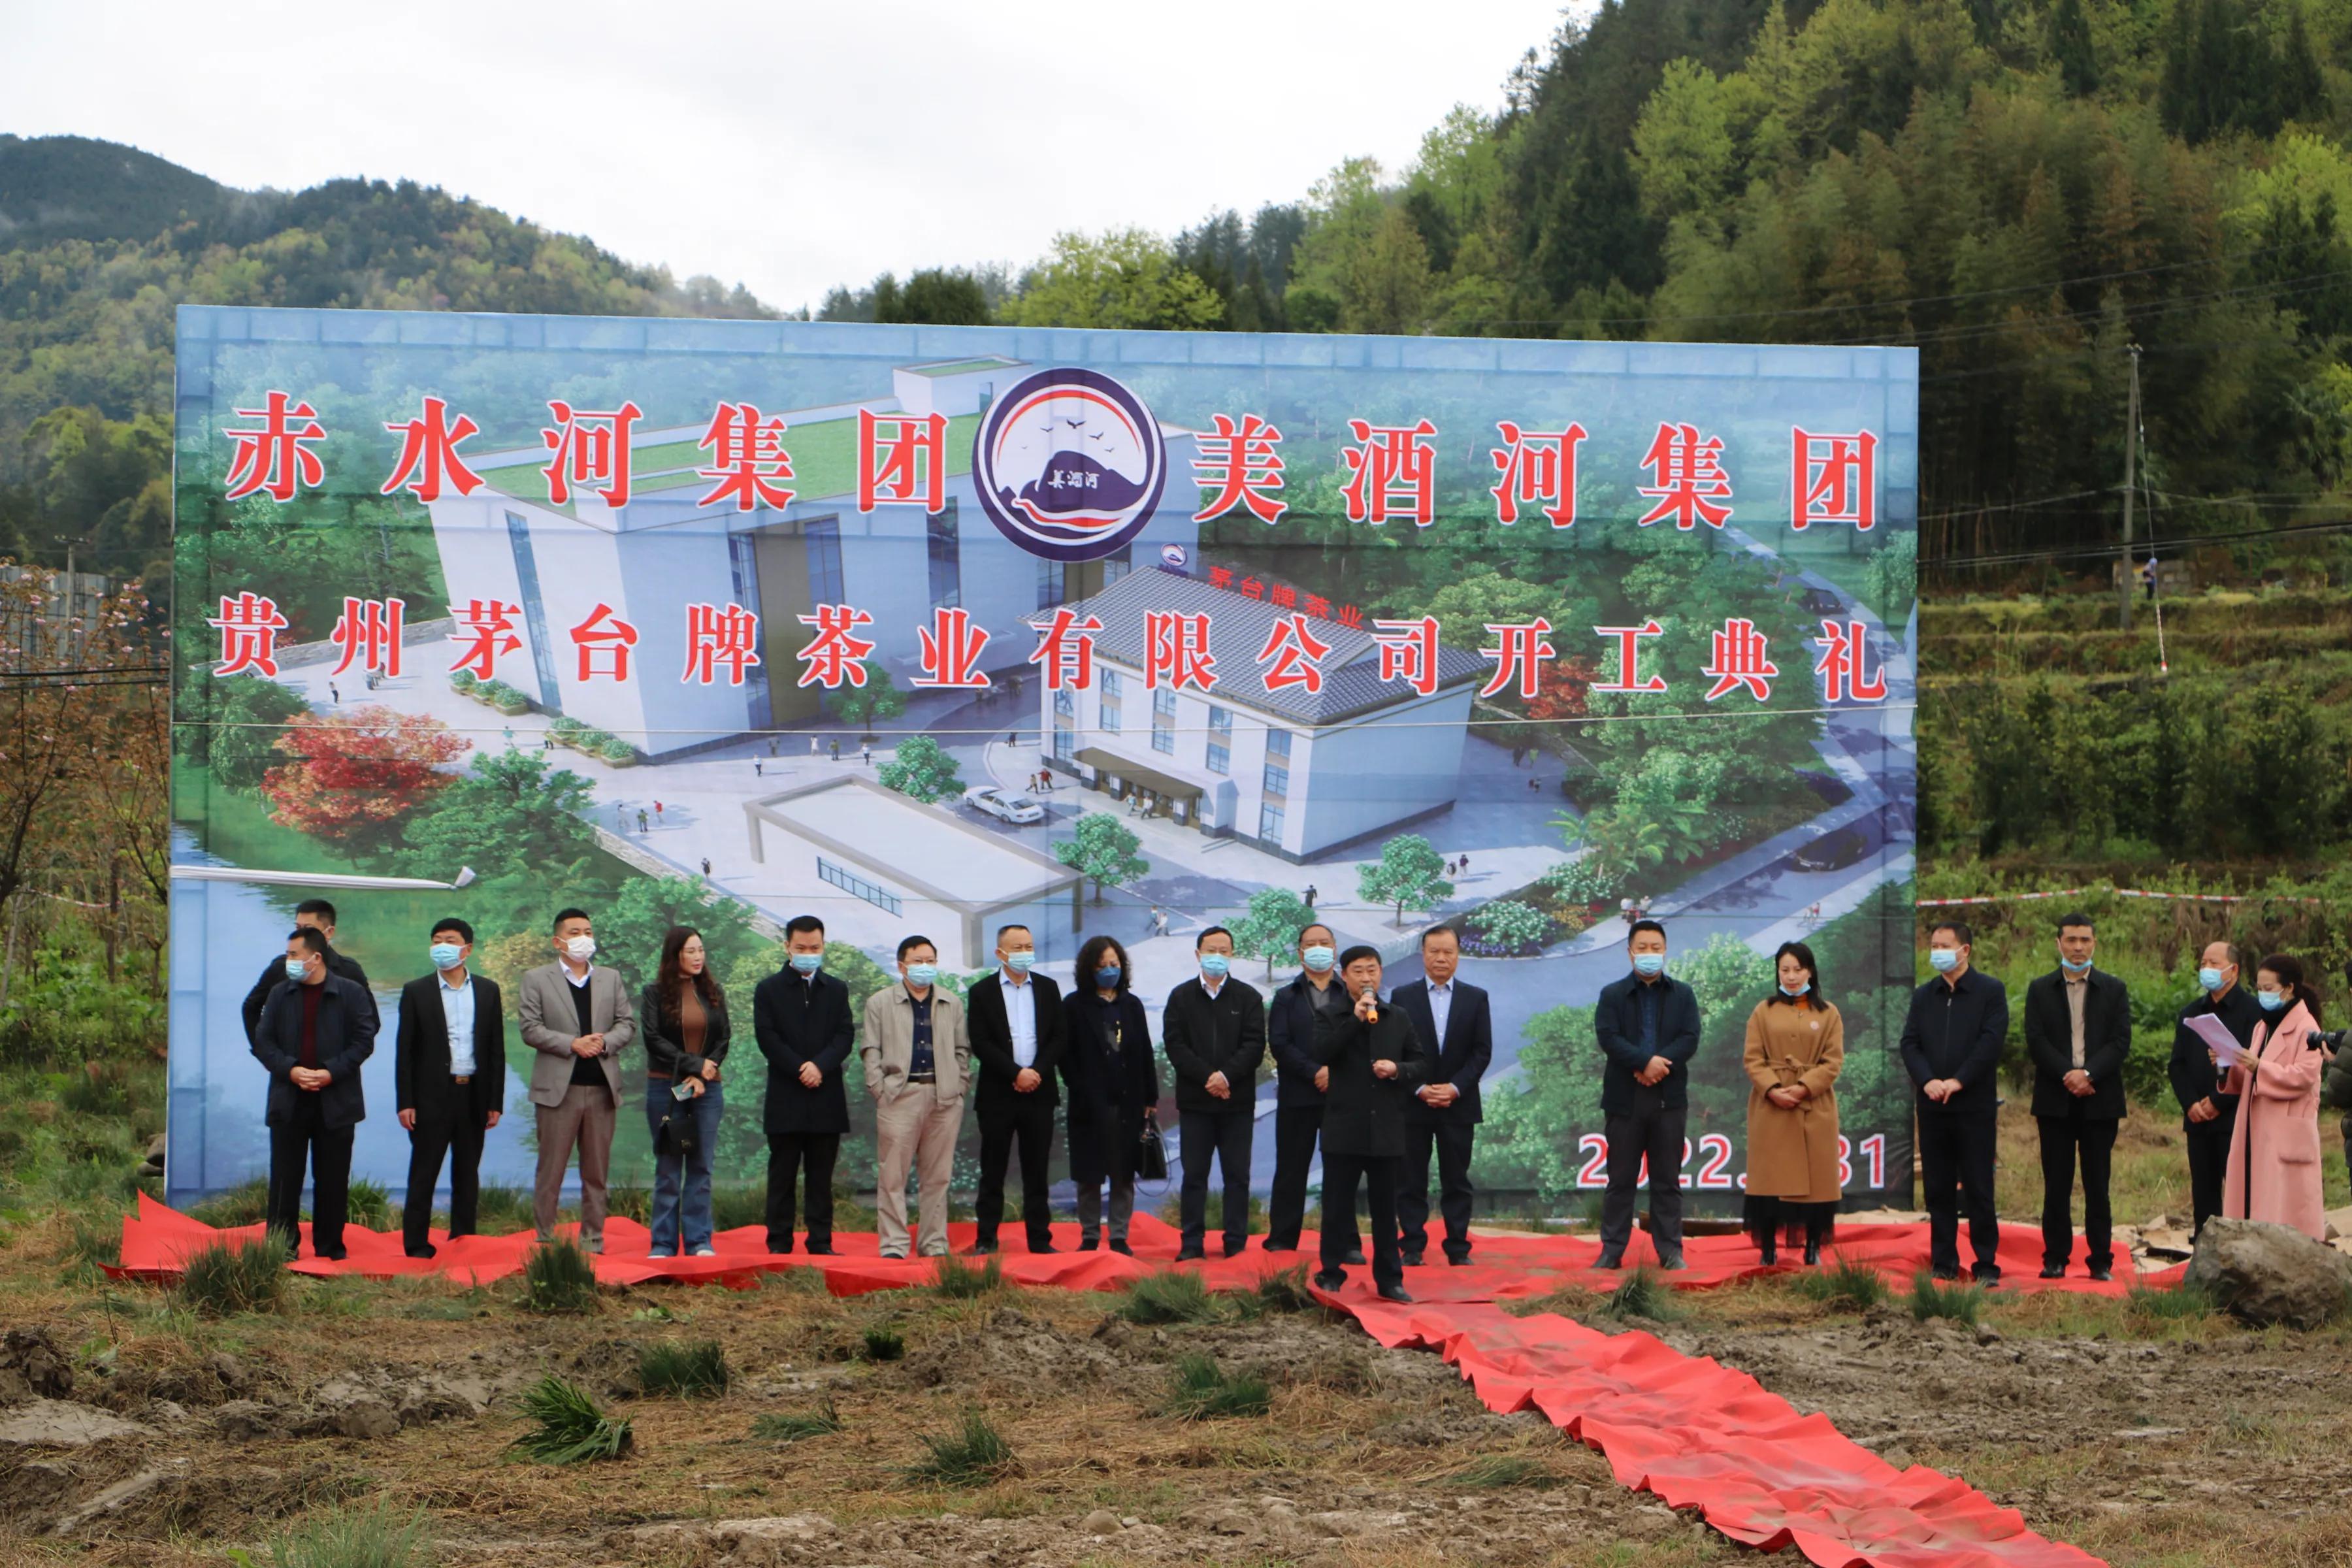 贵州茅台牌茶业有限公司茶厂建设项目在茅台村开工